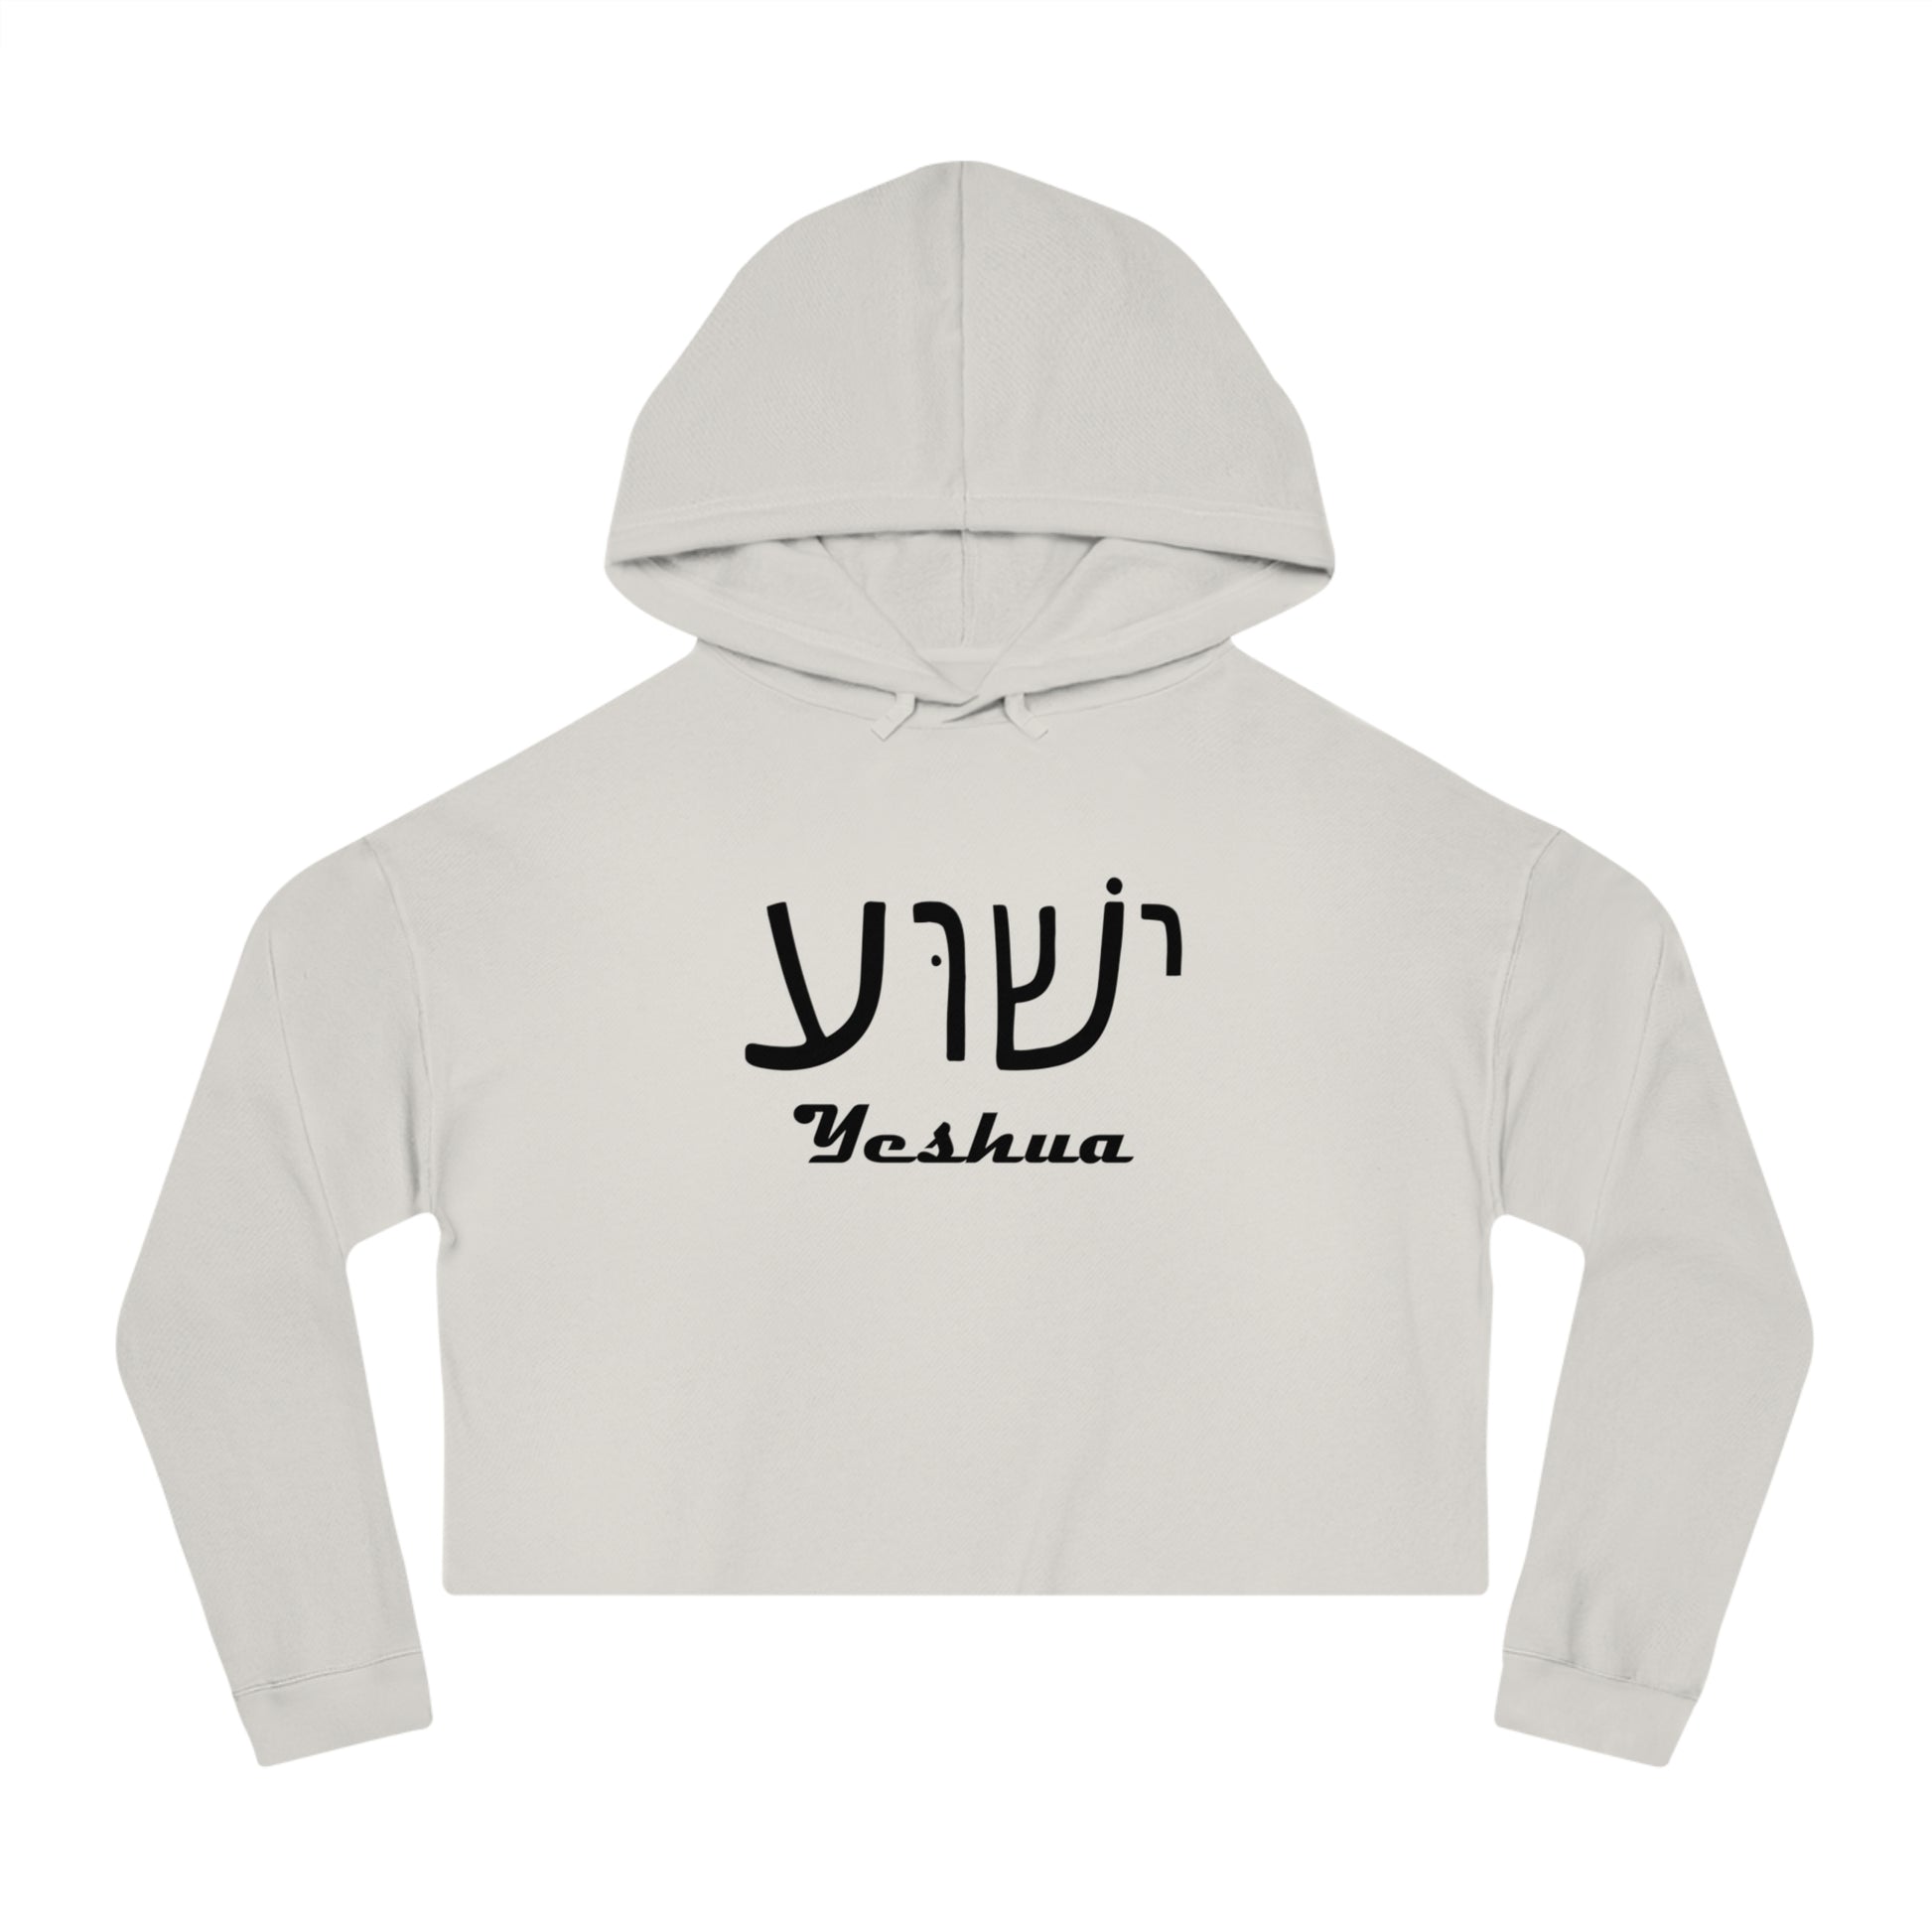 Yeshua Hooded Sweatshirt Women’s